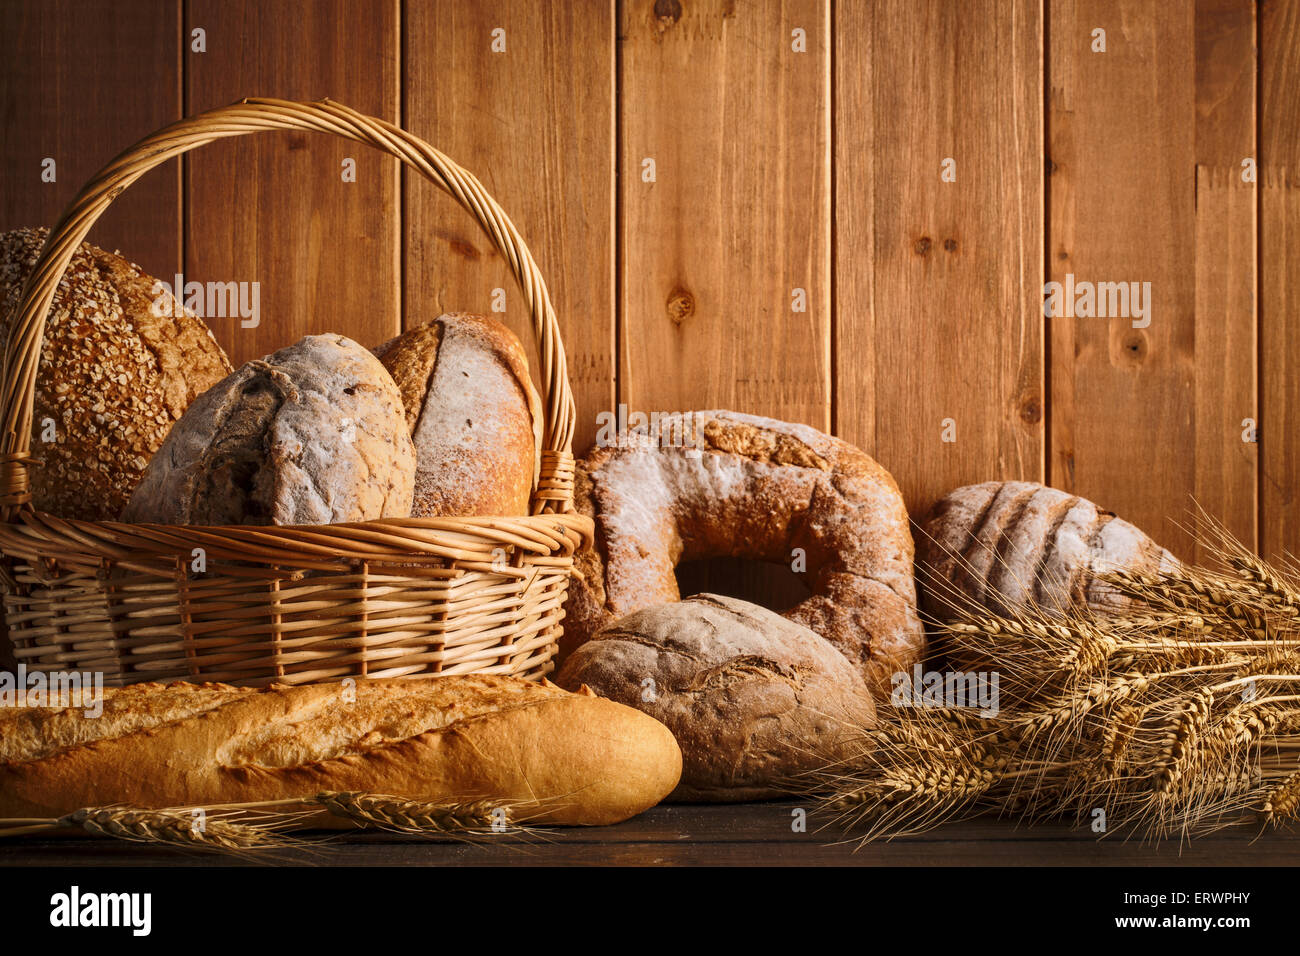 Du pain frais et de blé sur le sol en bois Banque D'Images